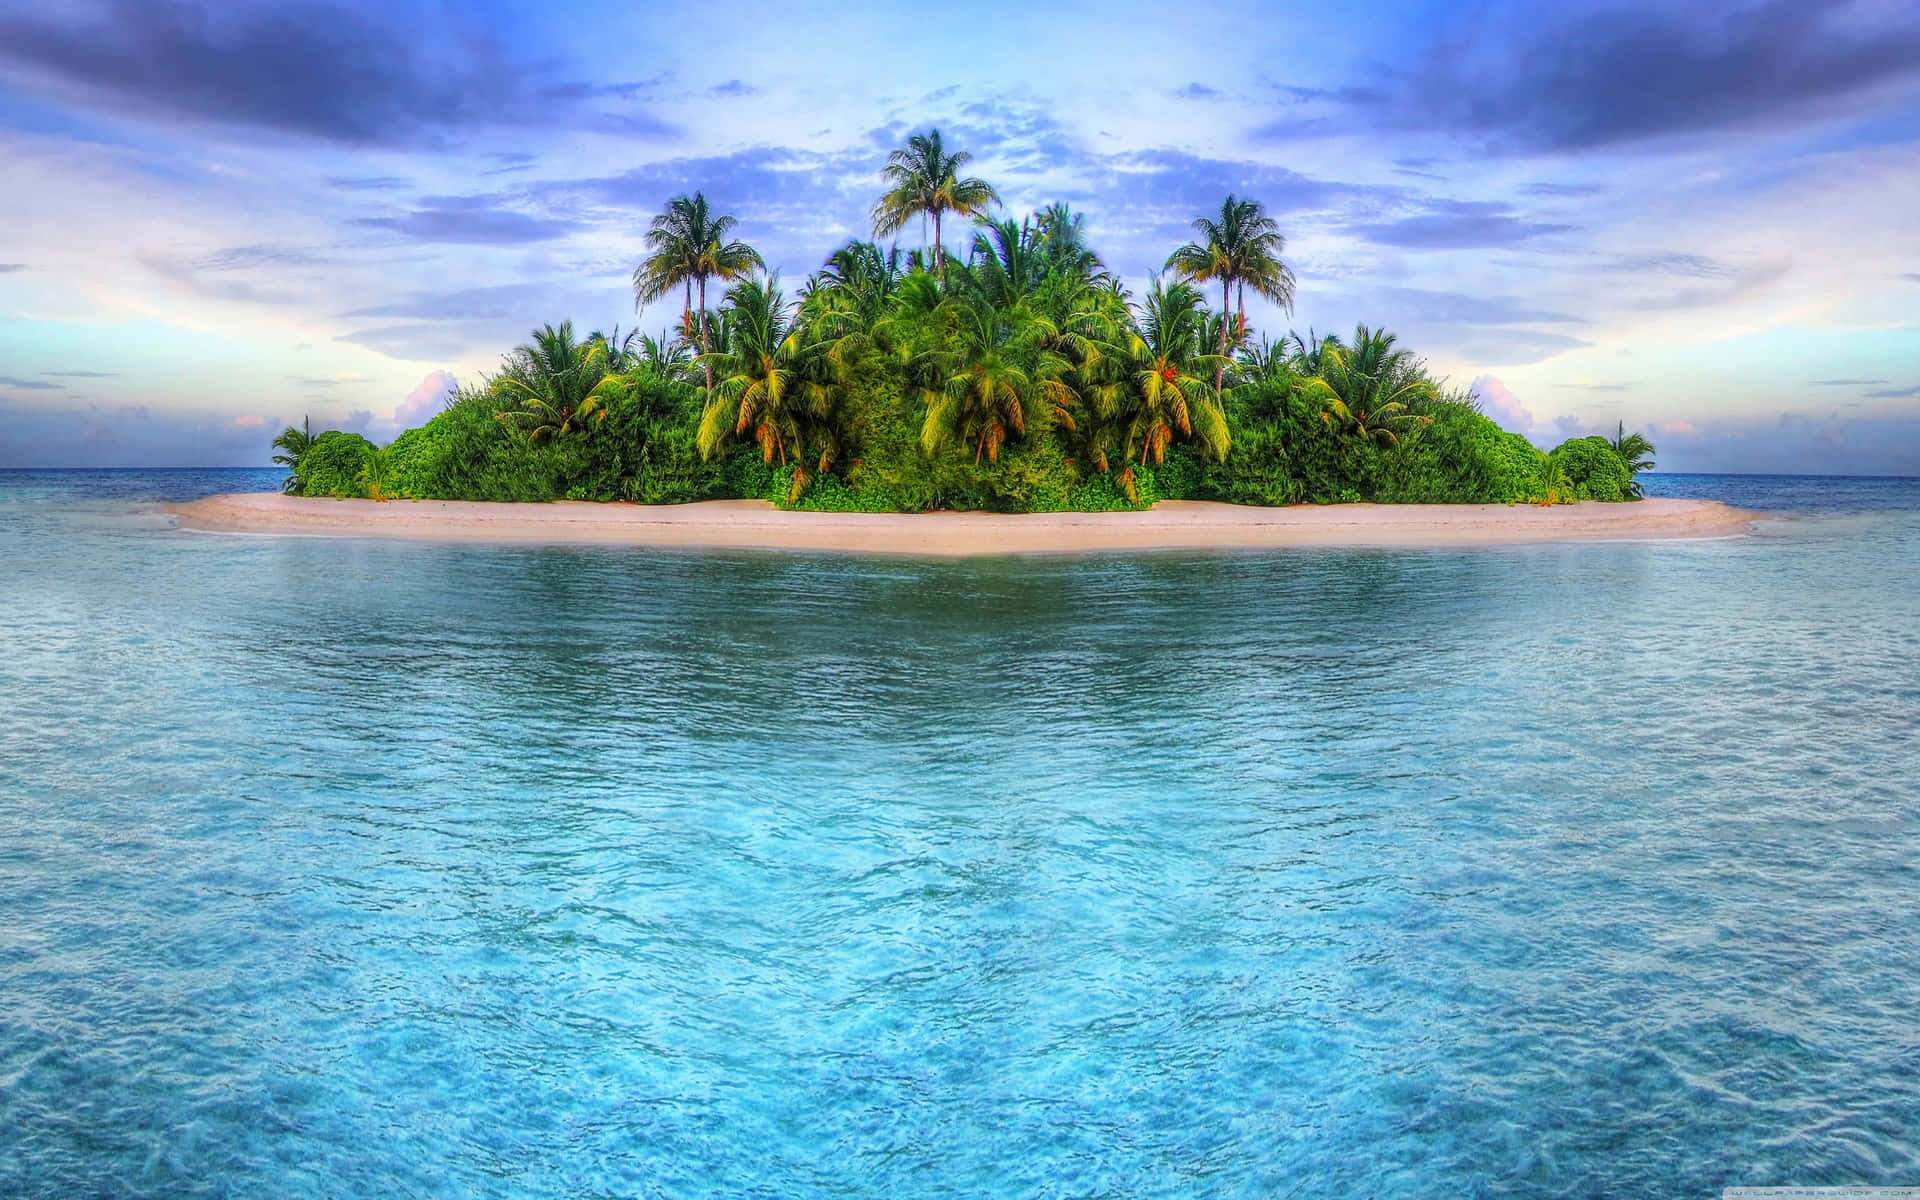 !Nyd den magiske udsigt til en frodig tropisk ø! Wallpaper